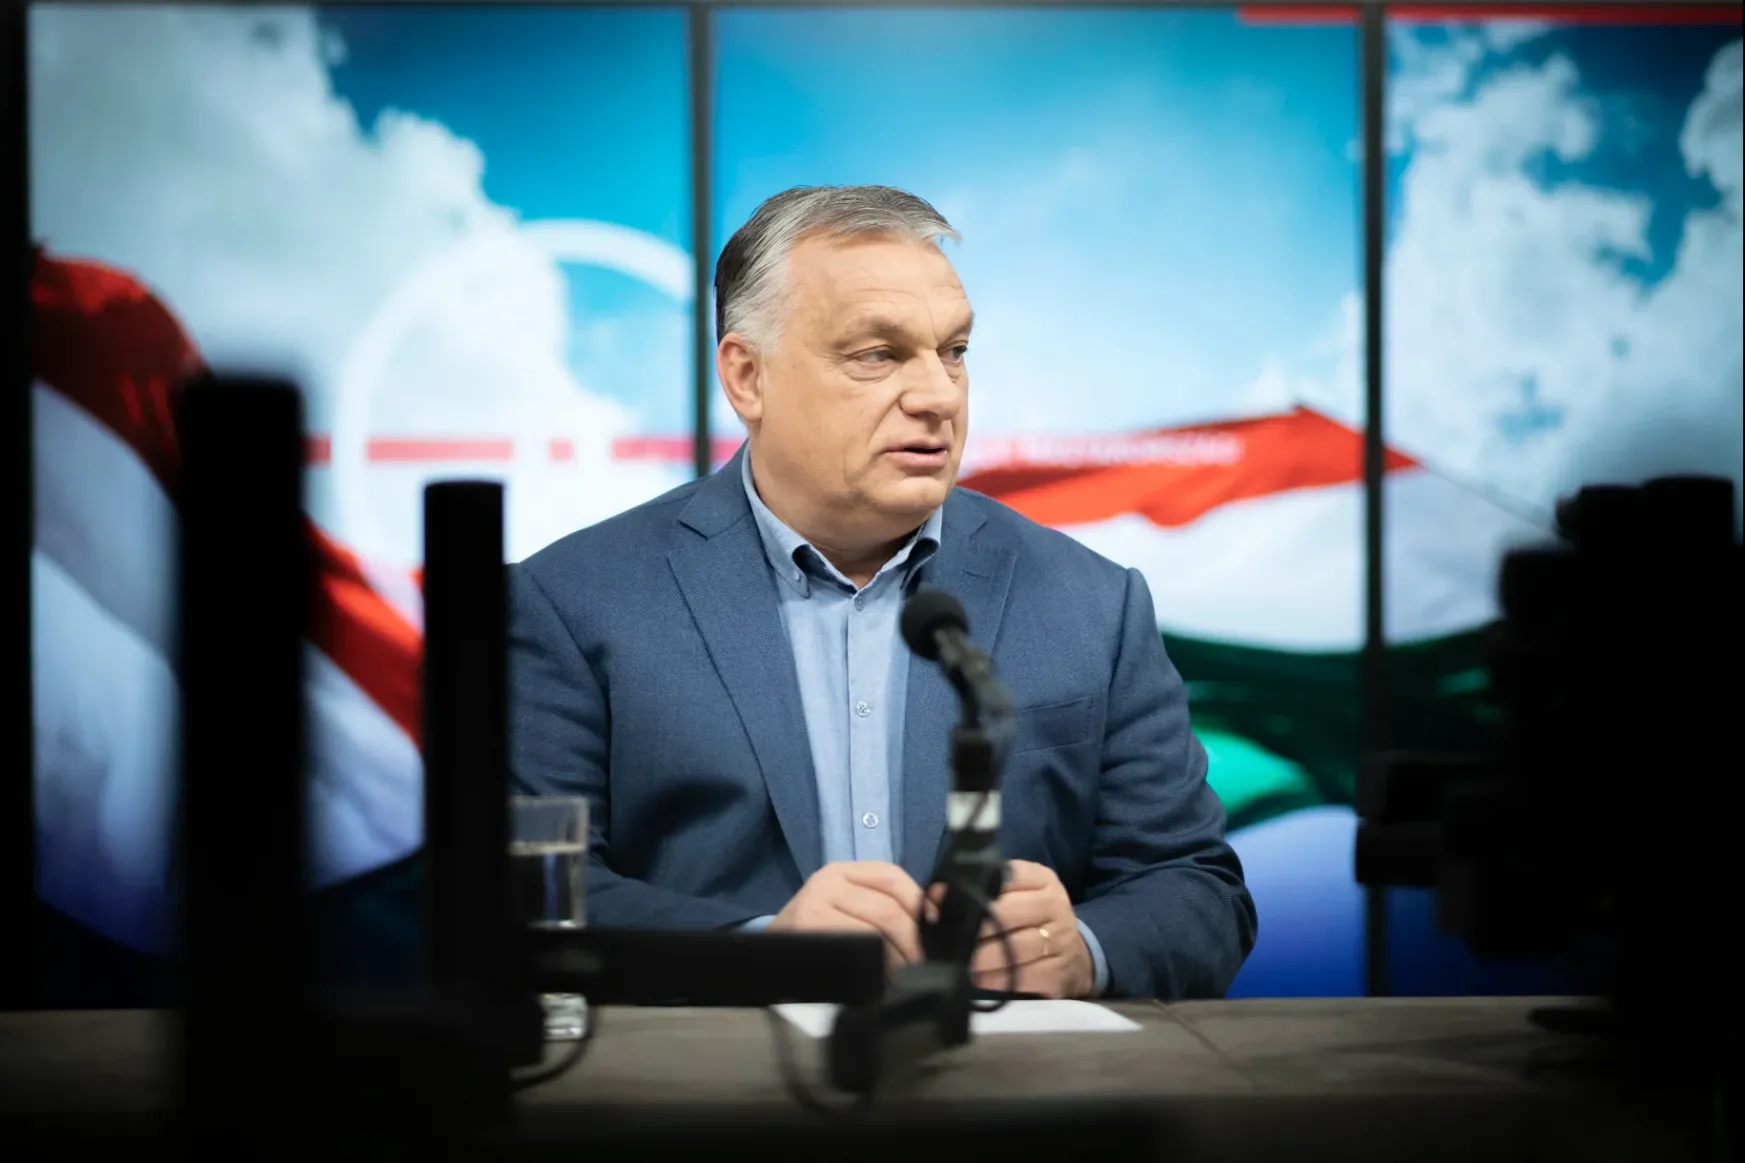 Orbán a Kossuth rádióban: Ez orbitális választási csalás